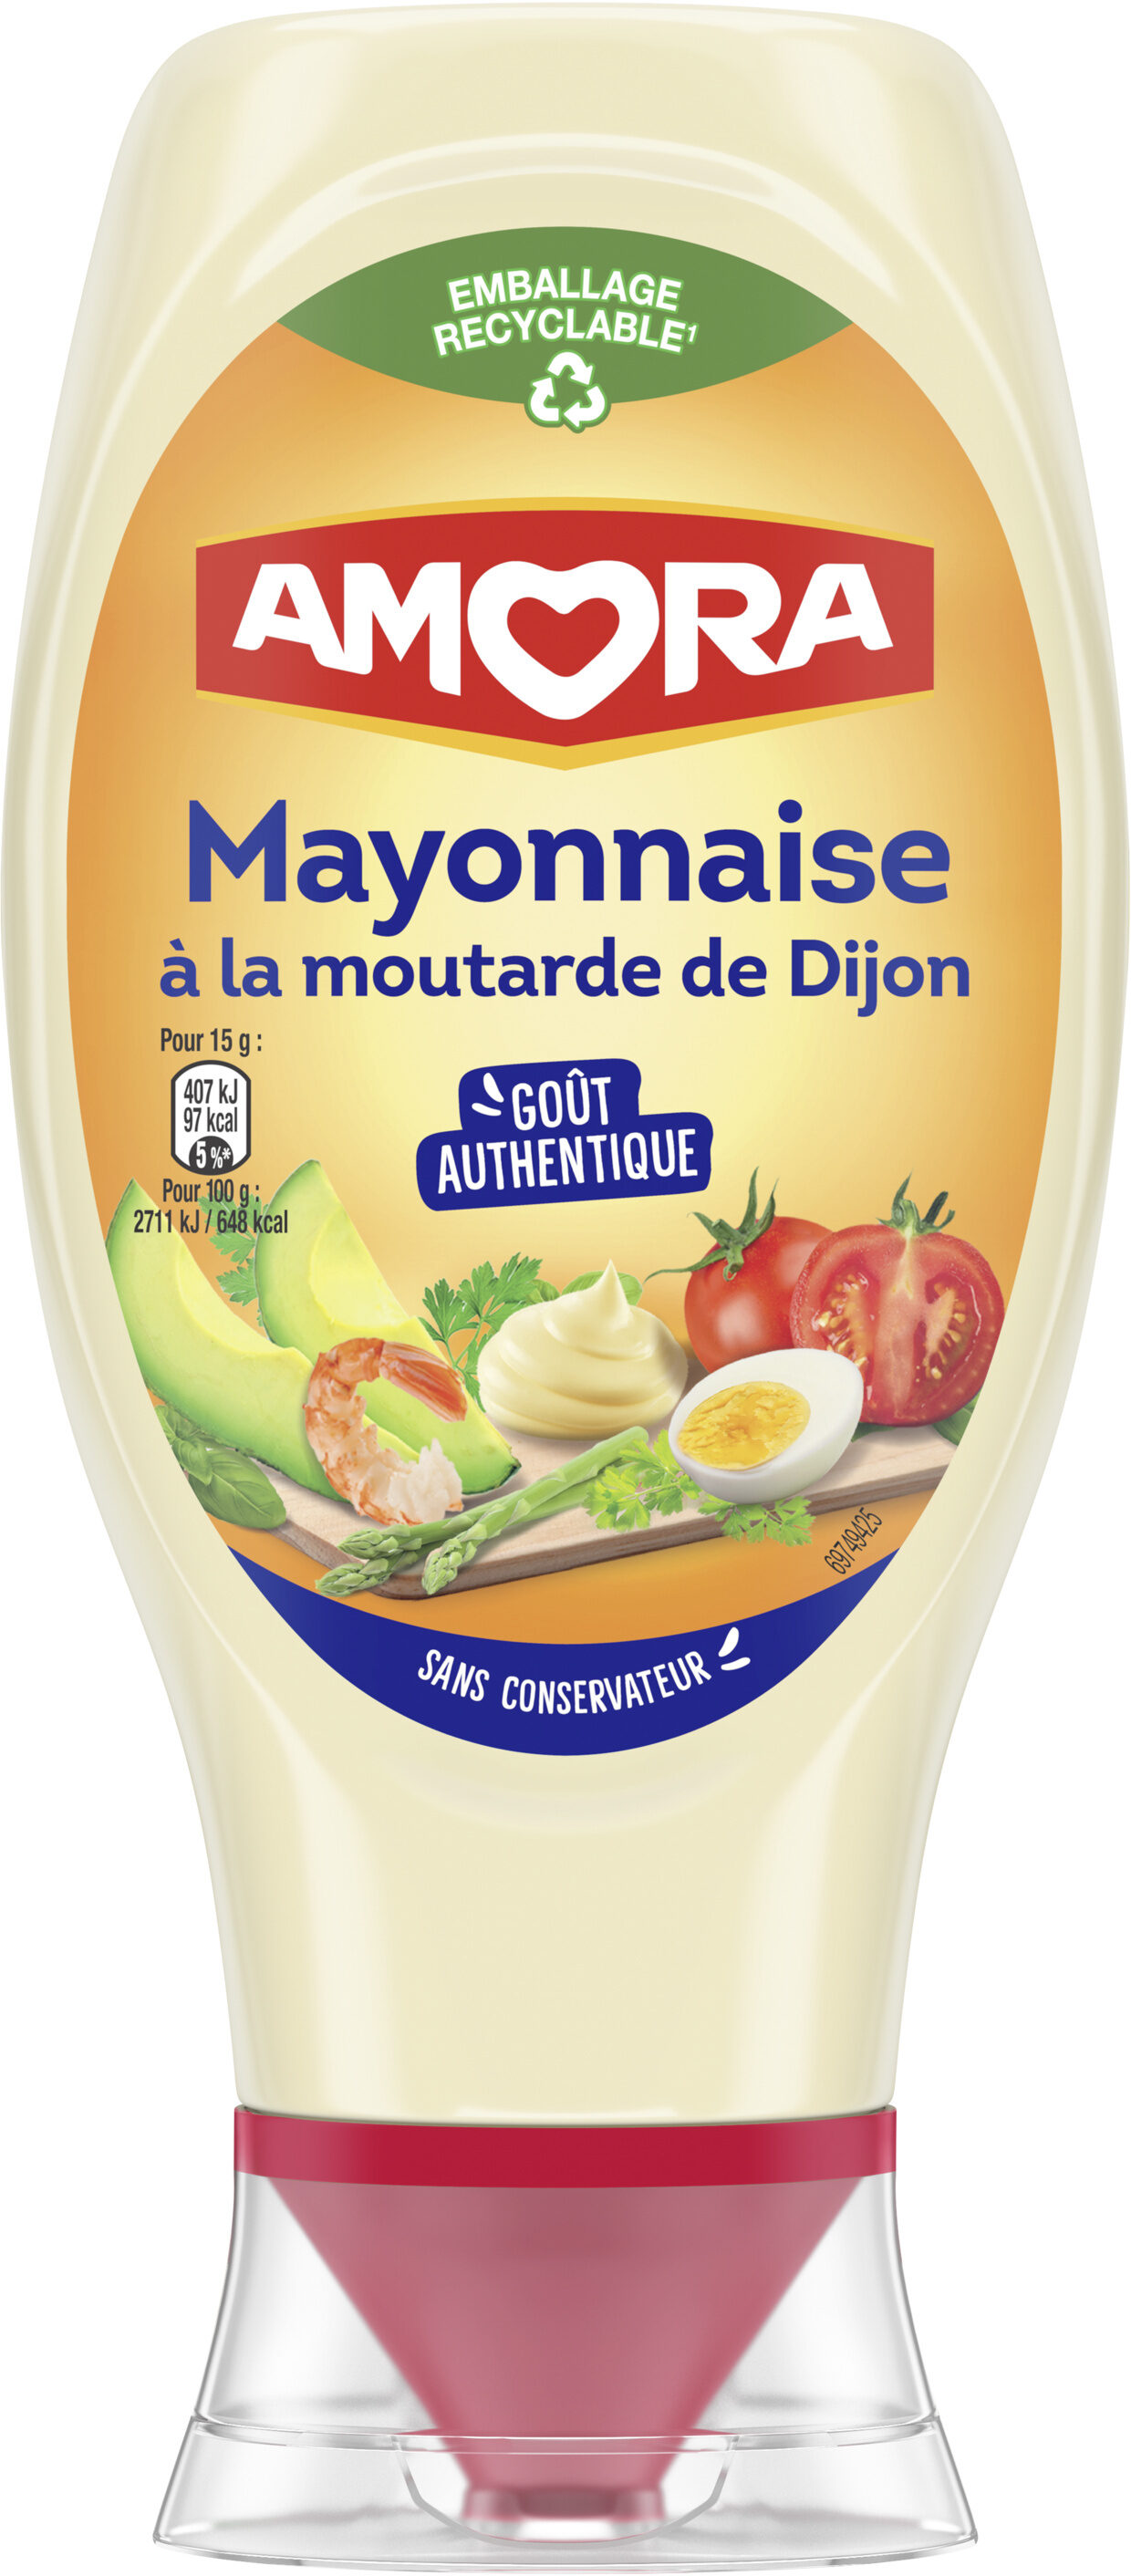 Amora Mayonnaise De Dijon Flacon Souple 415g - 产品 - fr